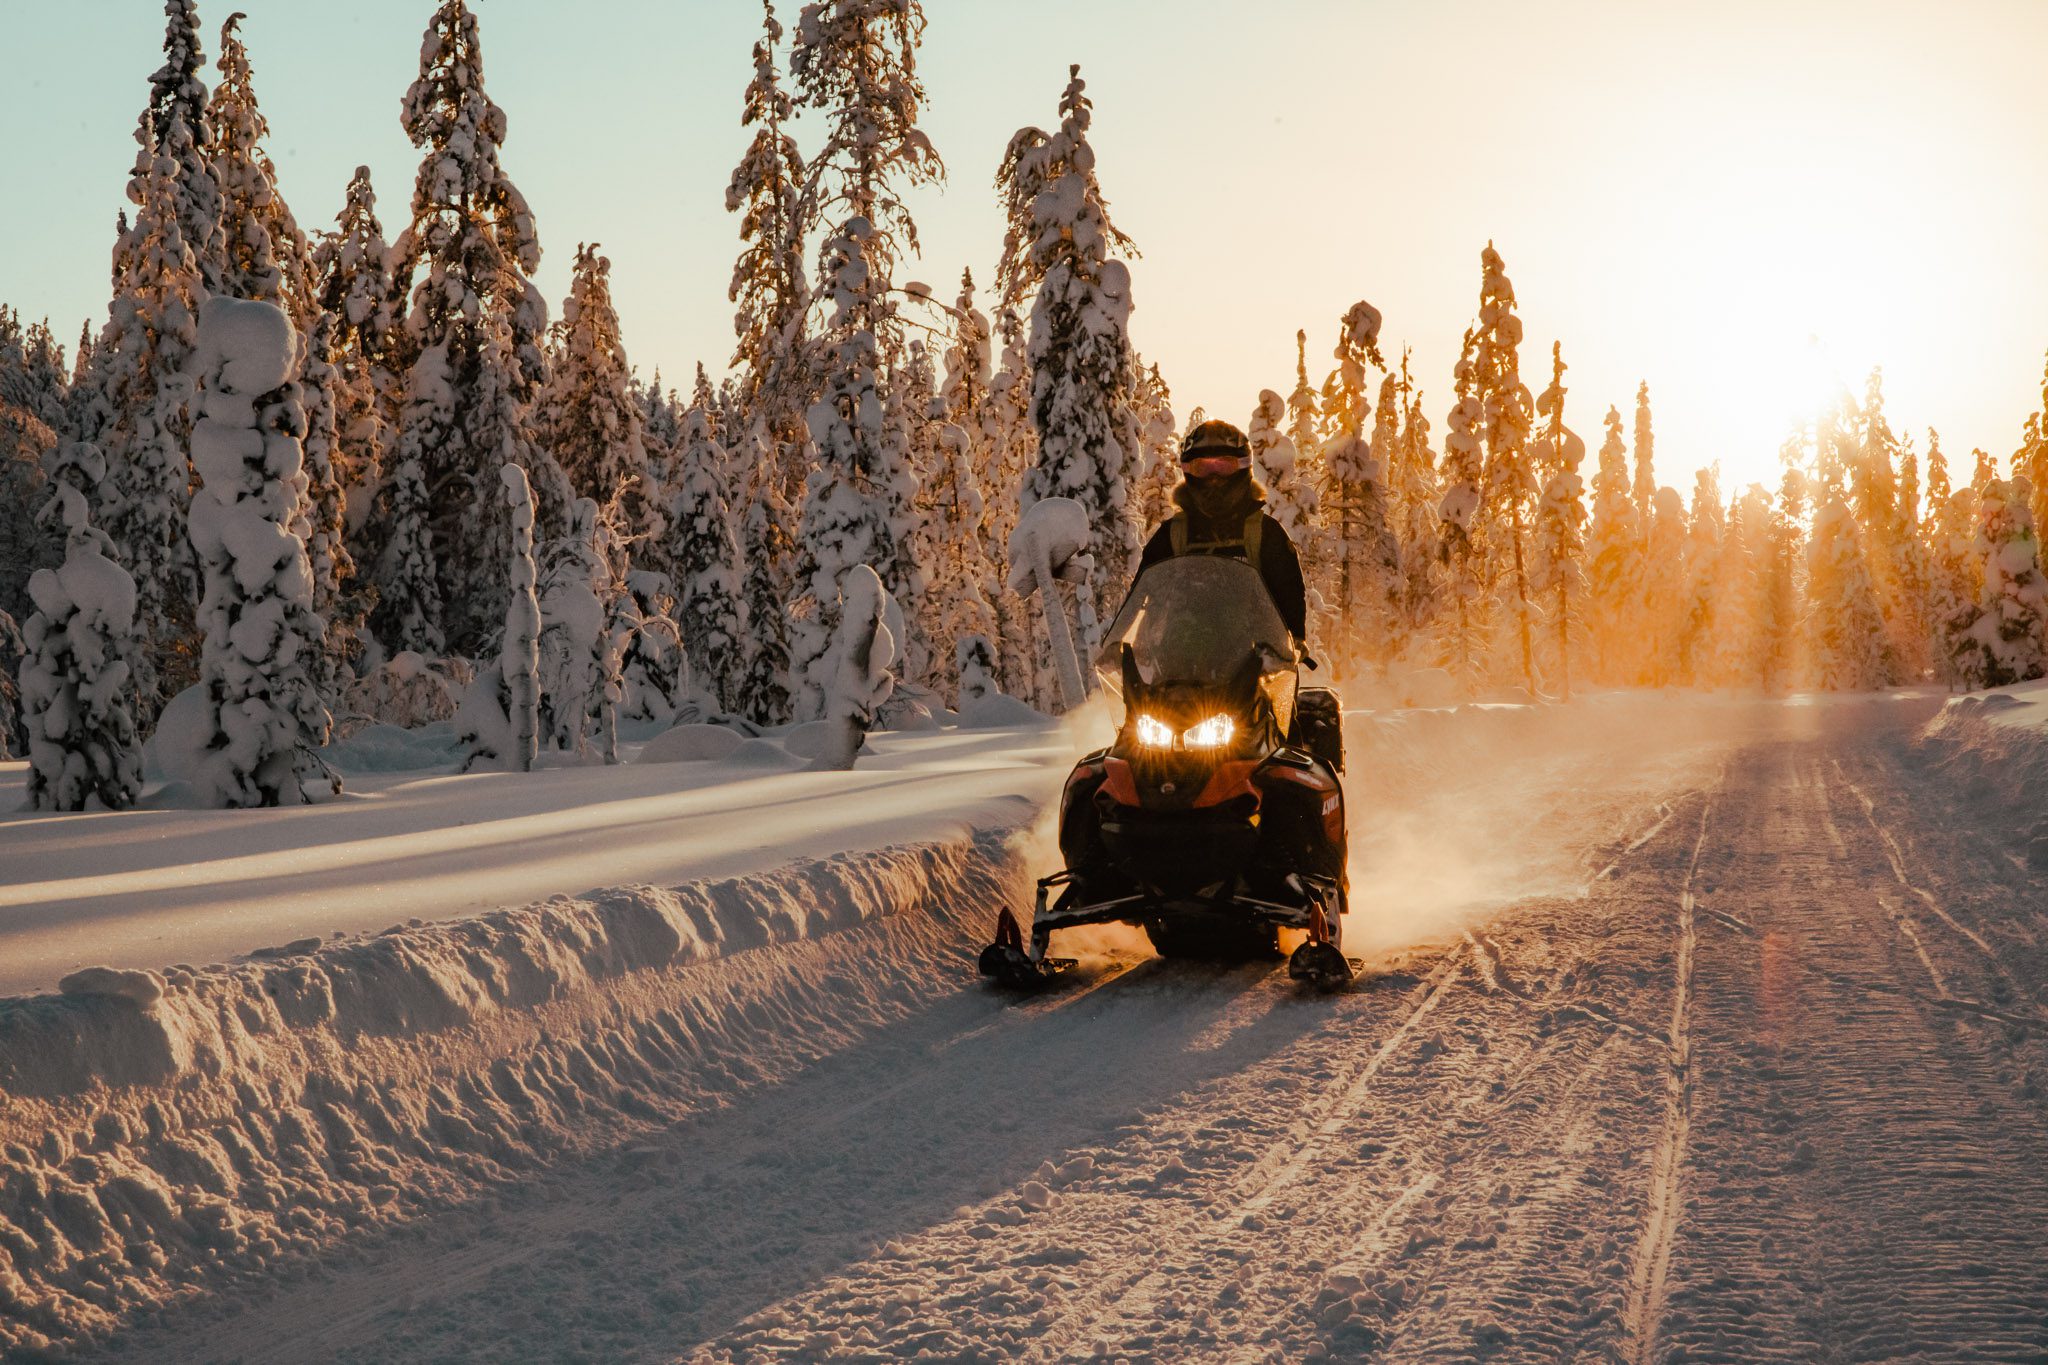 Vakantie in Lapland: welke bestemming kies je?